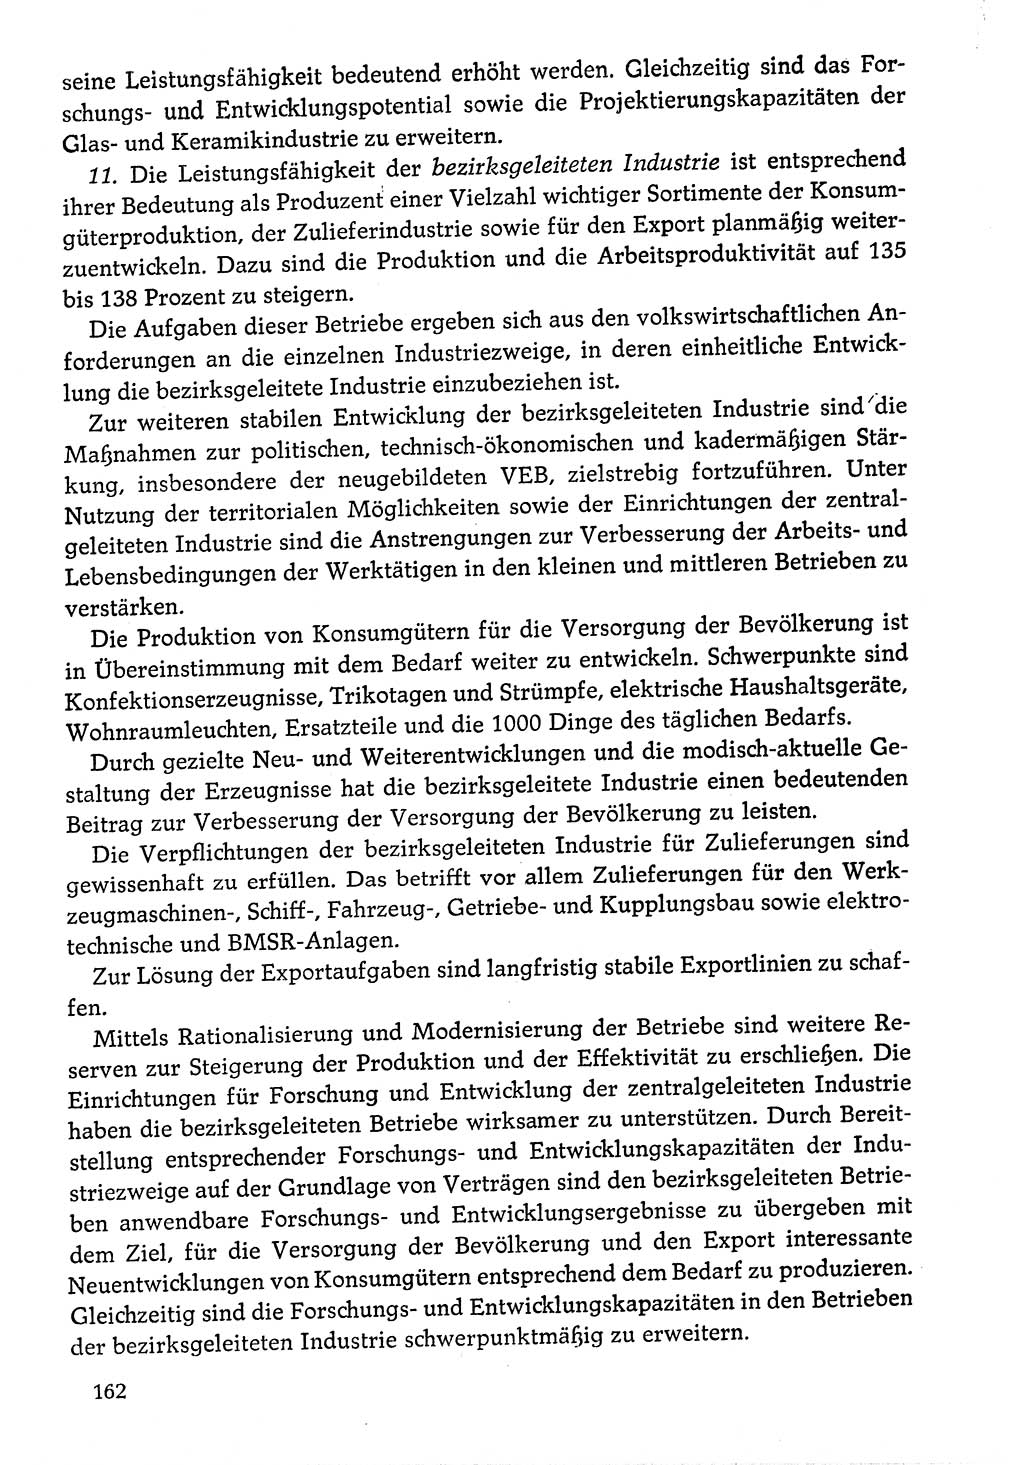 Dokumente der Sozialistischen Einheitspartei Deutschlands (SED) [Deutsche Demokratische Republik (DDR)] 1976-1977, Seite 162 (Dok. SED DDR 1976-1977, S. 162)